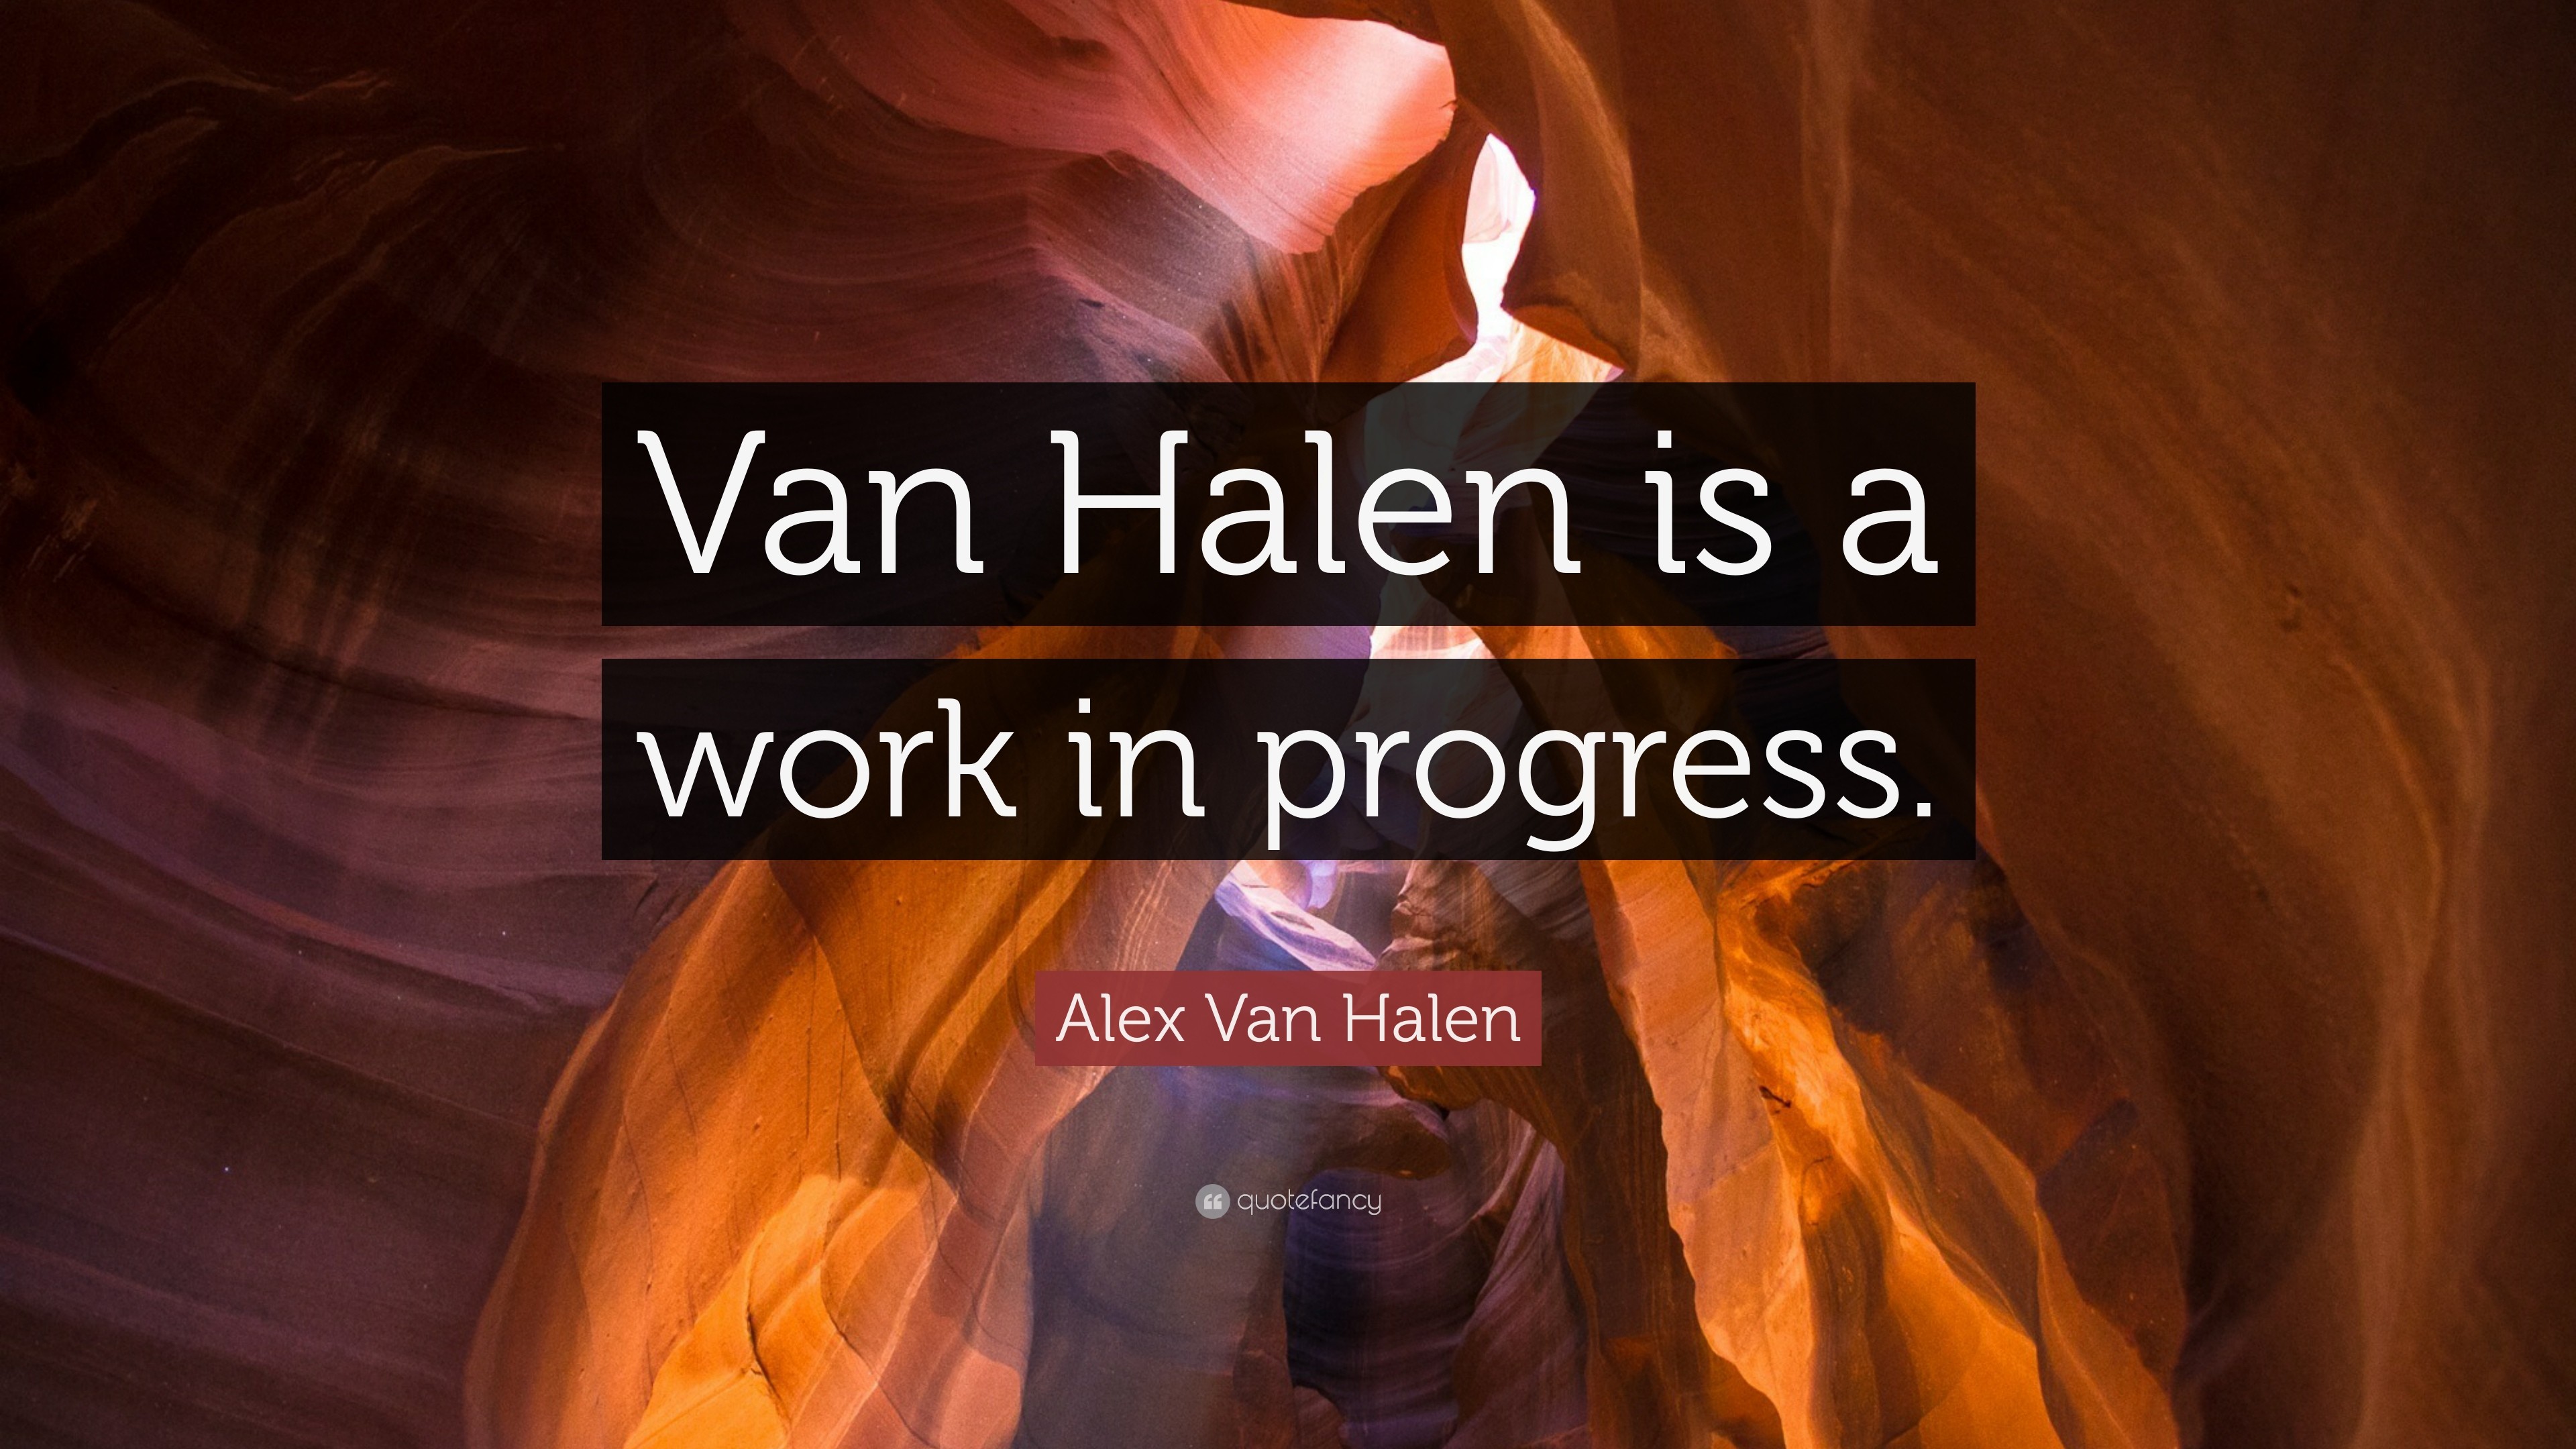 3840x2160 Alex Van Halen Quote: “Van Halen is a work in progress.”